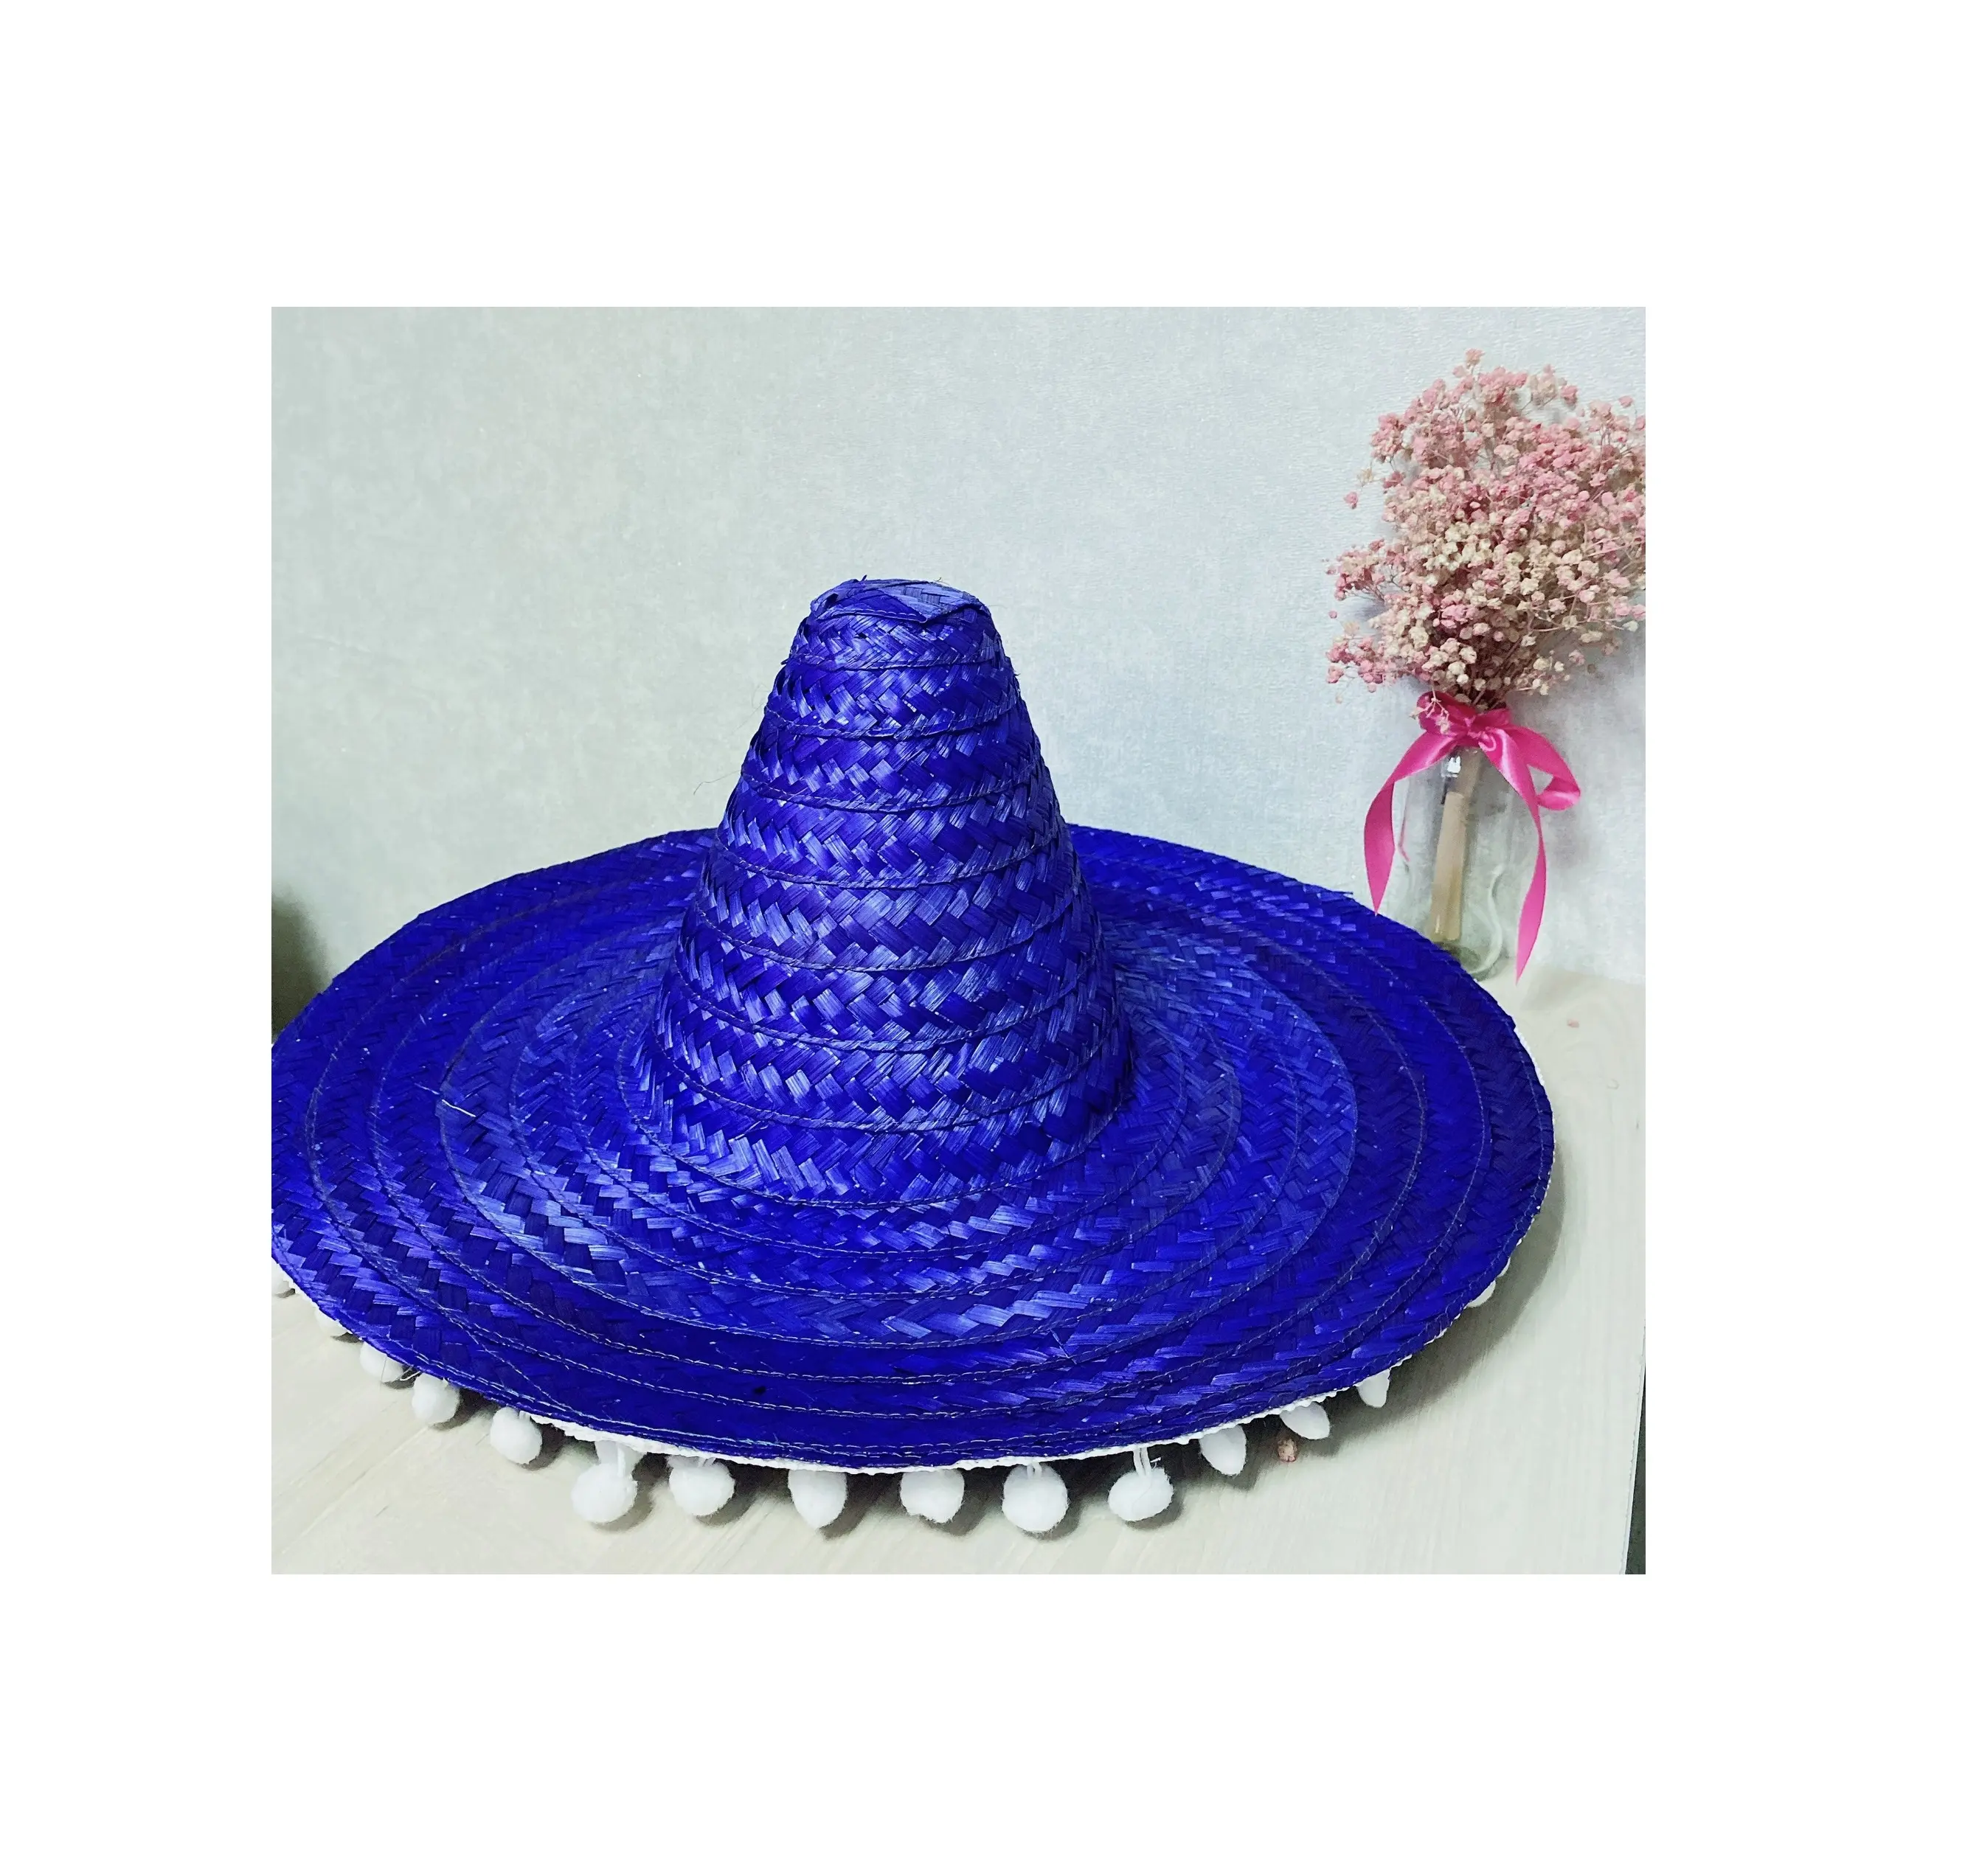 Nuevo estilo colorido Sombrero grande mexicano Sombrero de paja fiesta boda verano playa sombrero/auténtico Sombrero sombrero de paja